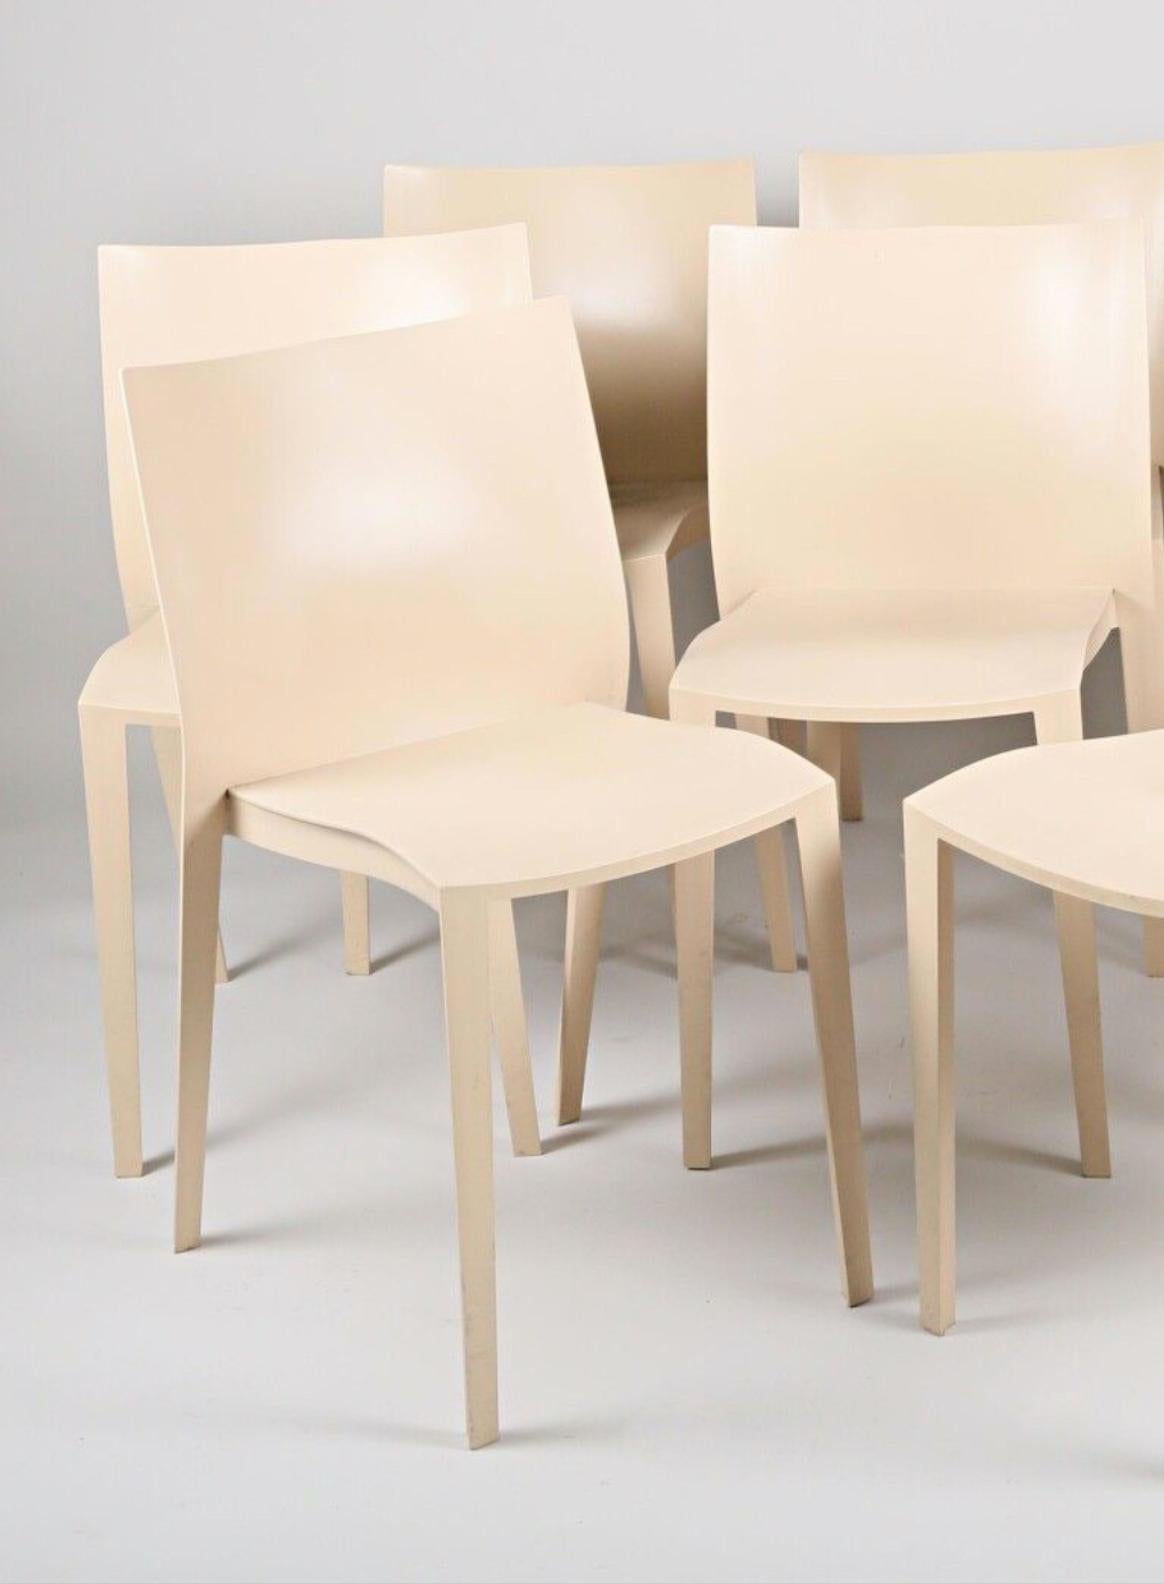 Chaises en plastique bien connues de Philippe Starck en couleur crème clair avec un tampon sous le siège.
Pourrait être vendu séparément.
vers 1999.